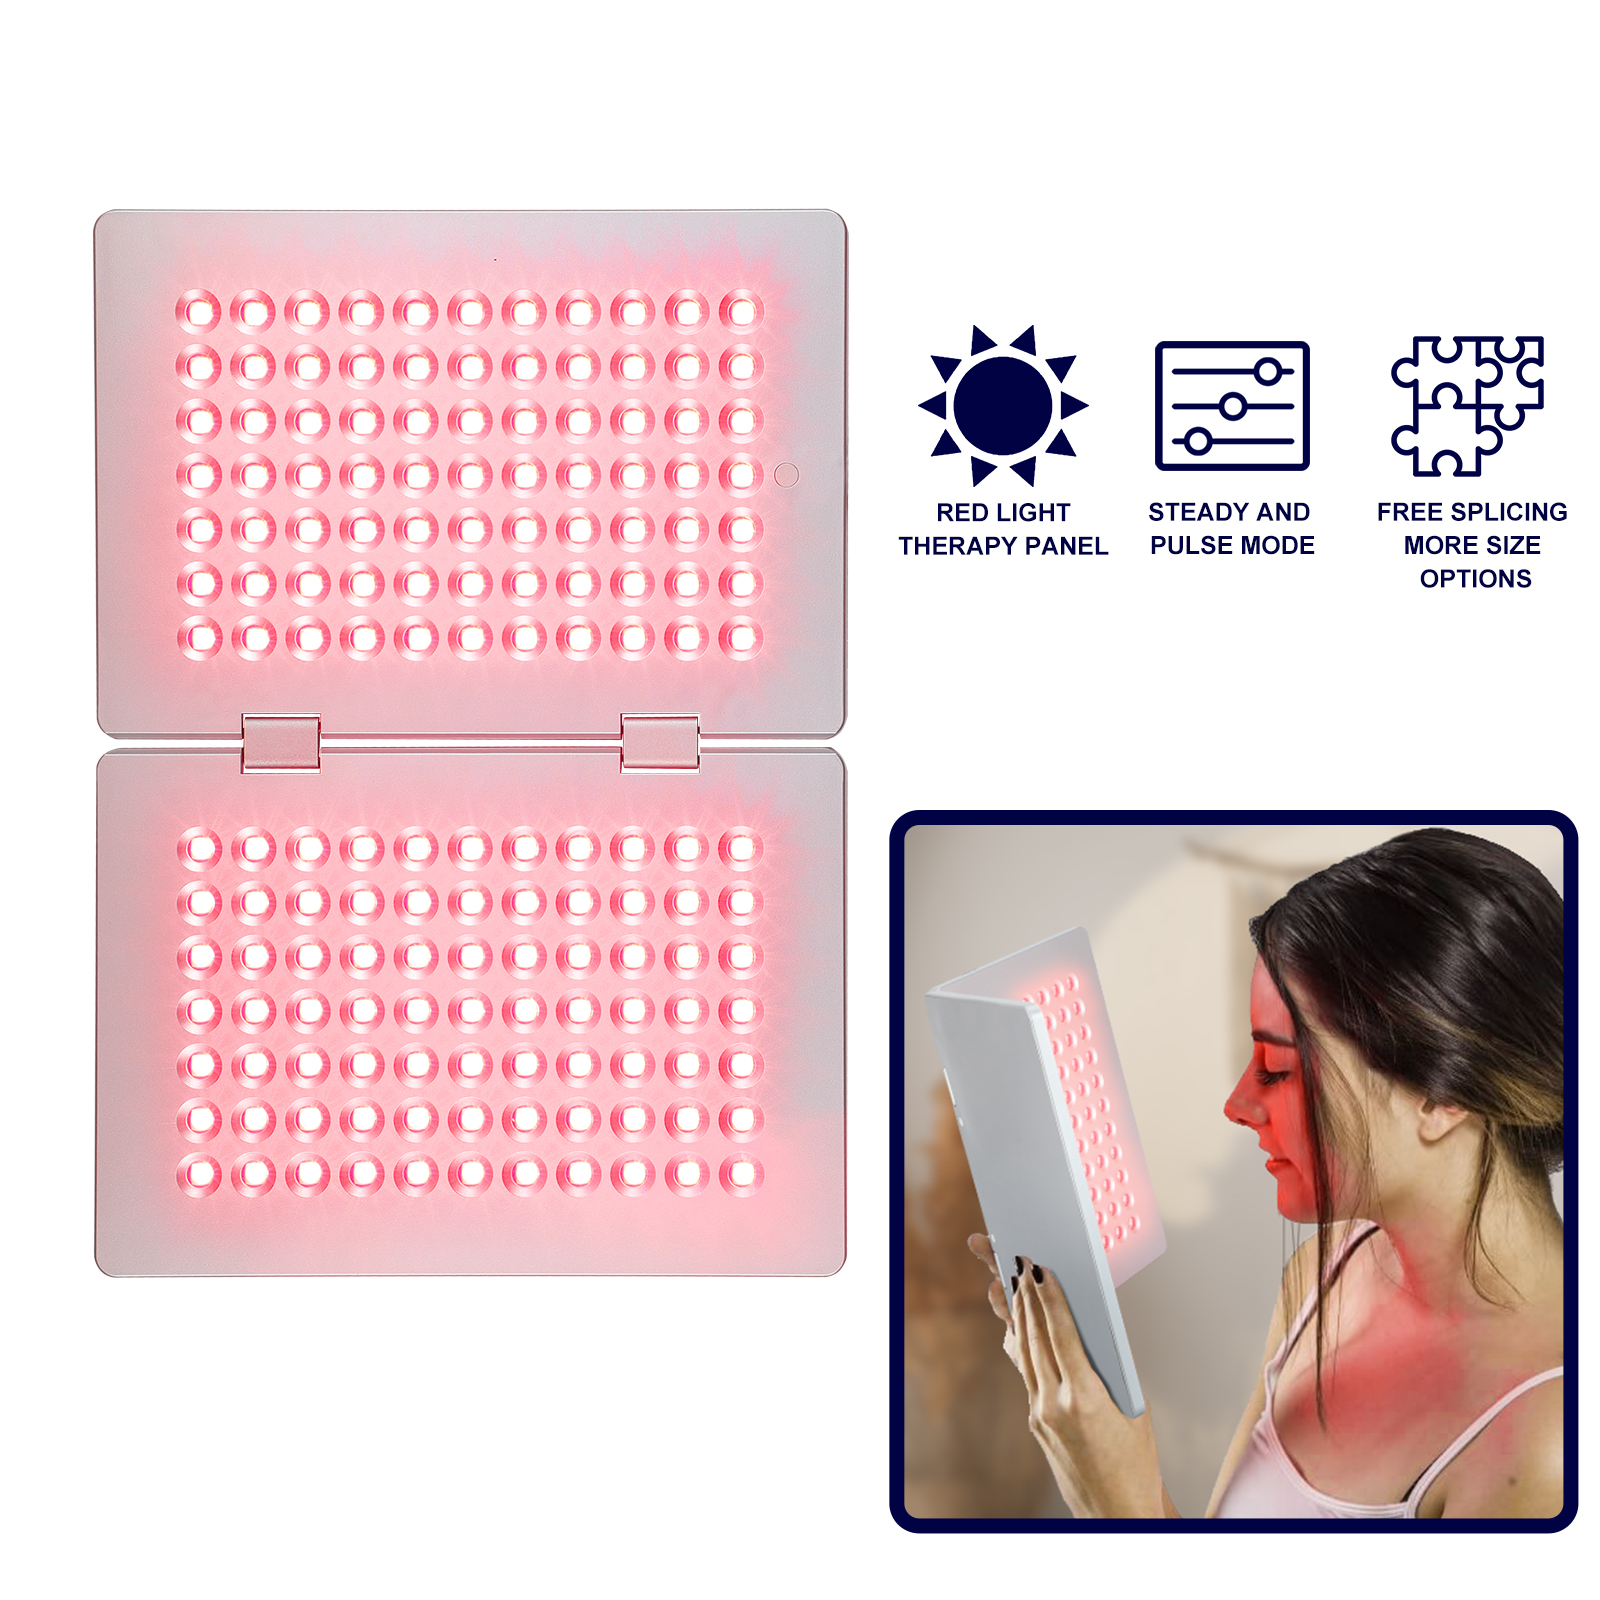 Painel de terapia de luz vermelha Kinreen - B5 painéis duplos - foco na beleza da pele e alívio da dor